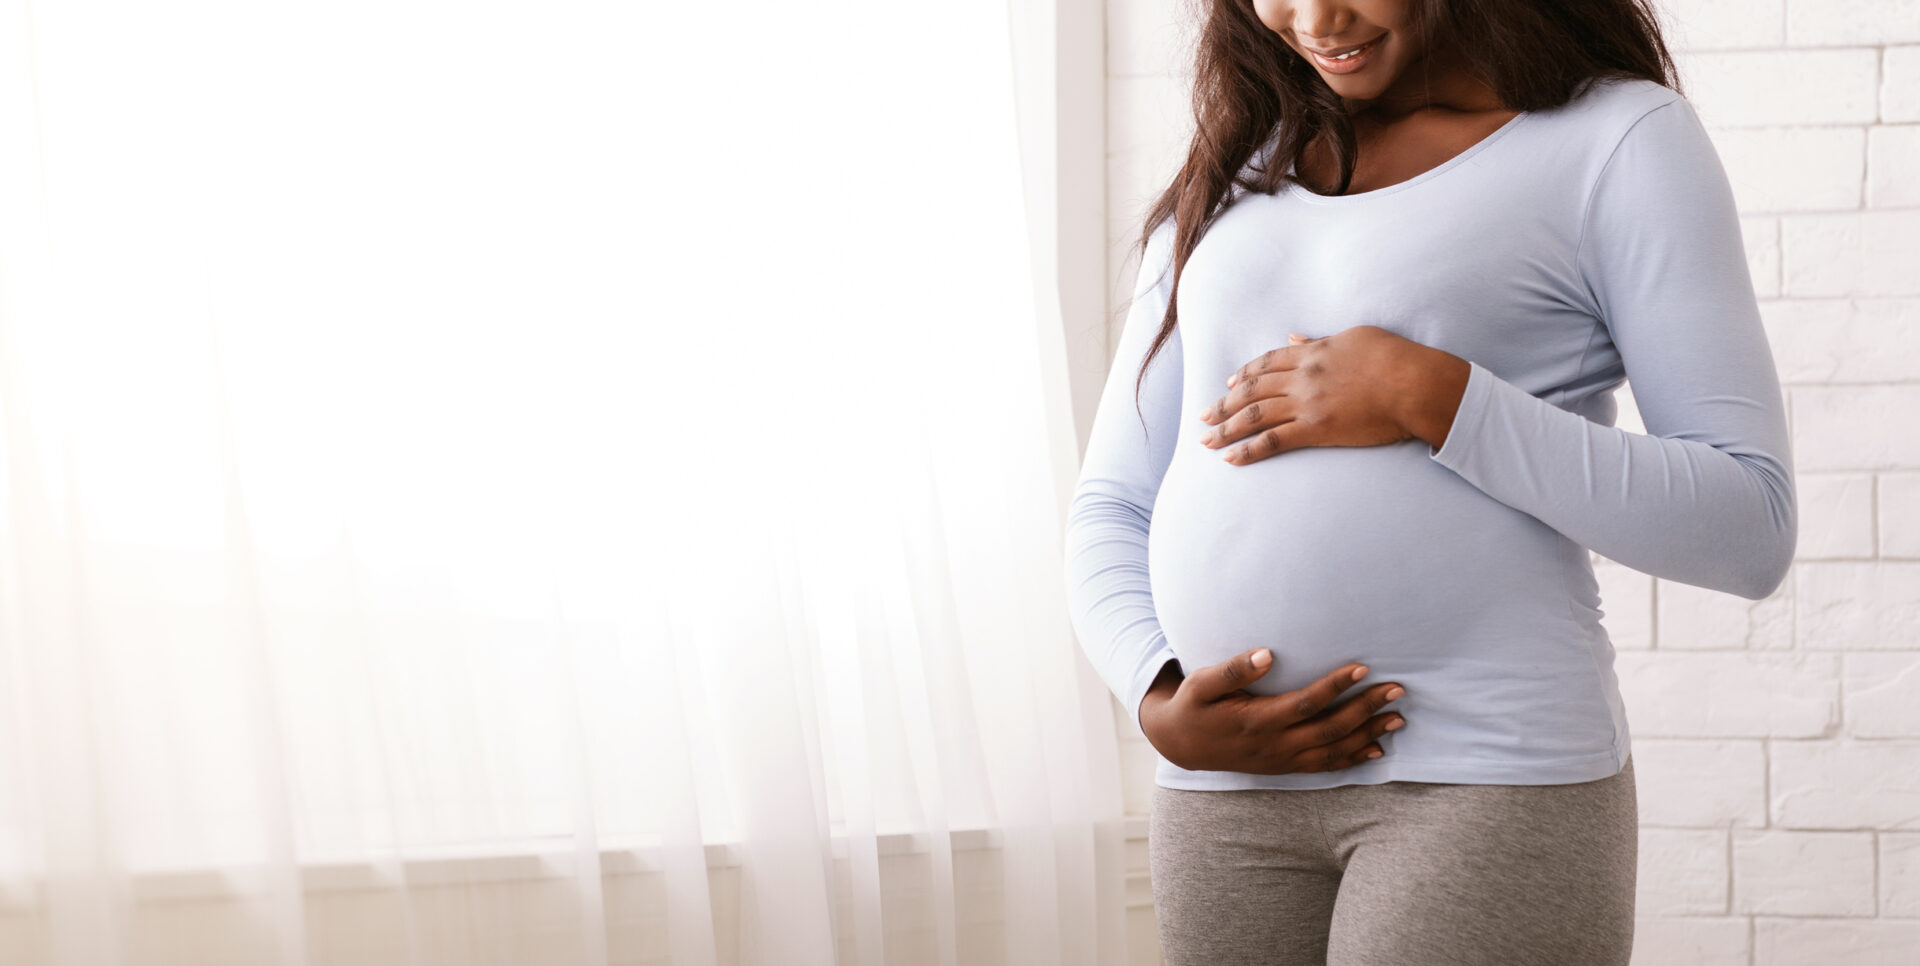 サリドマイドは奇形原に分類され、妊娠中の女性が服用すると先天性欠損症を引き起こします。